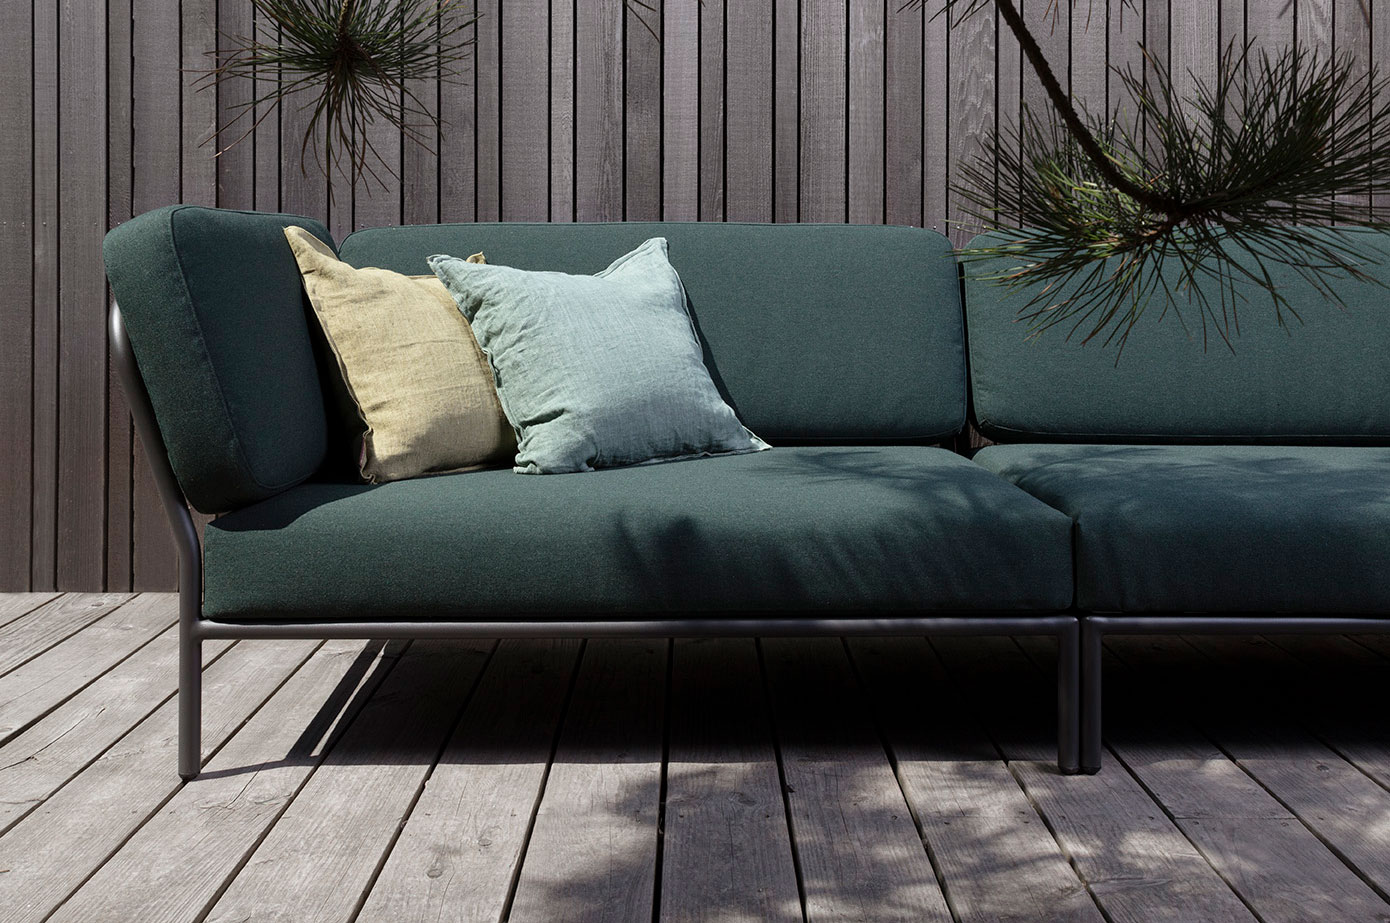 Outdoor & Indoor design furniture   HOUE